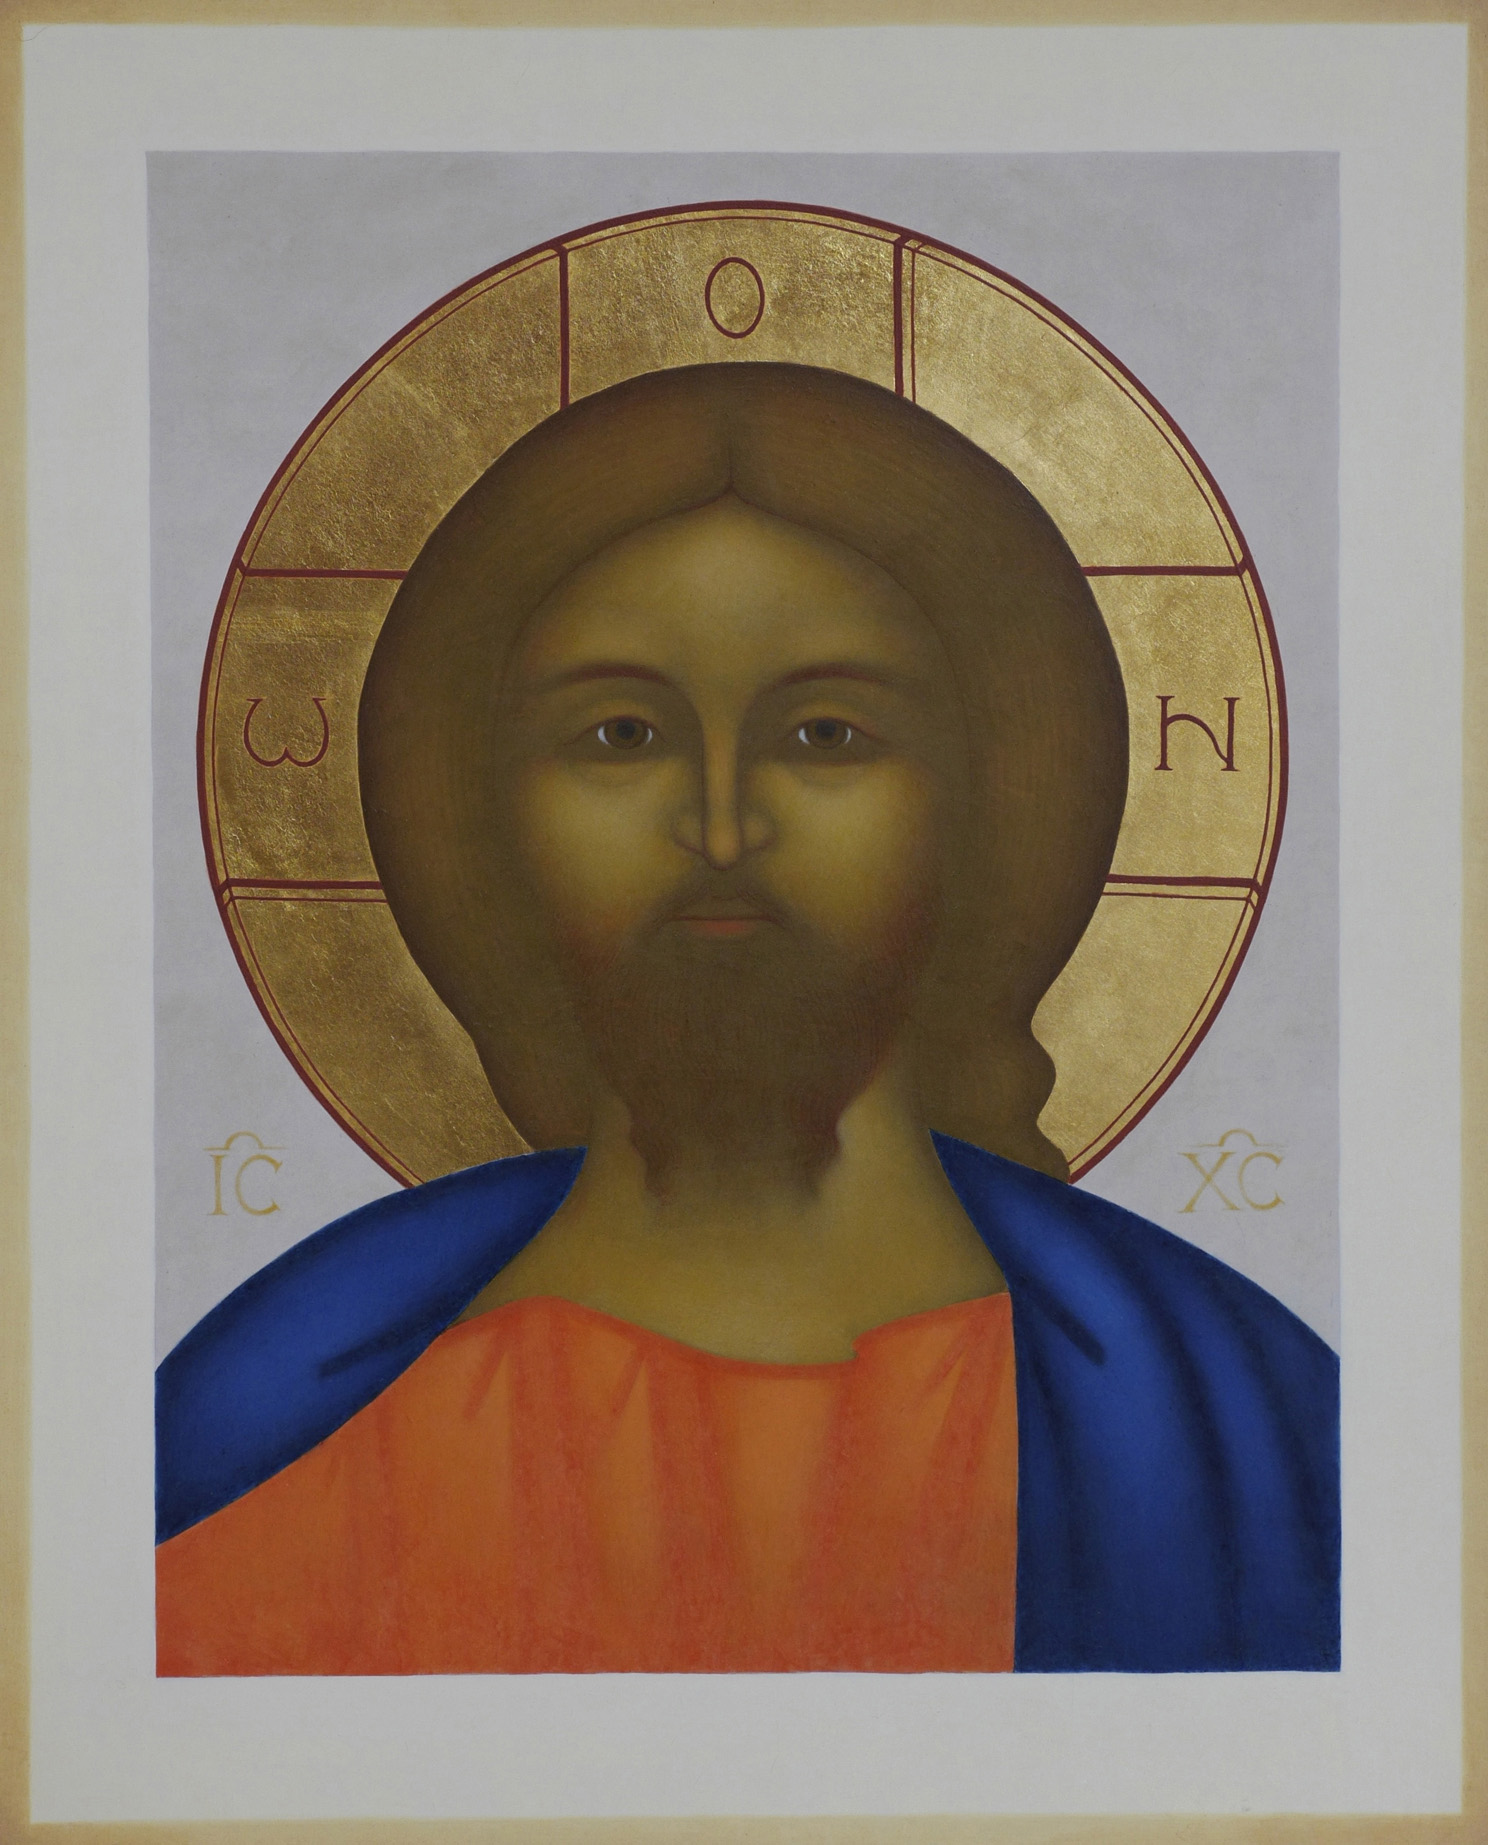 2. Kristus Pantokrator med den brinnande blicken. Ikon målad av Lars Gerdmar, 2015. 47 x 38 cm. Foto, Mattias Piltz. Lunds stiftskansli